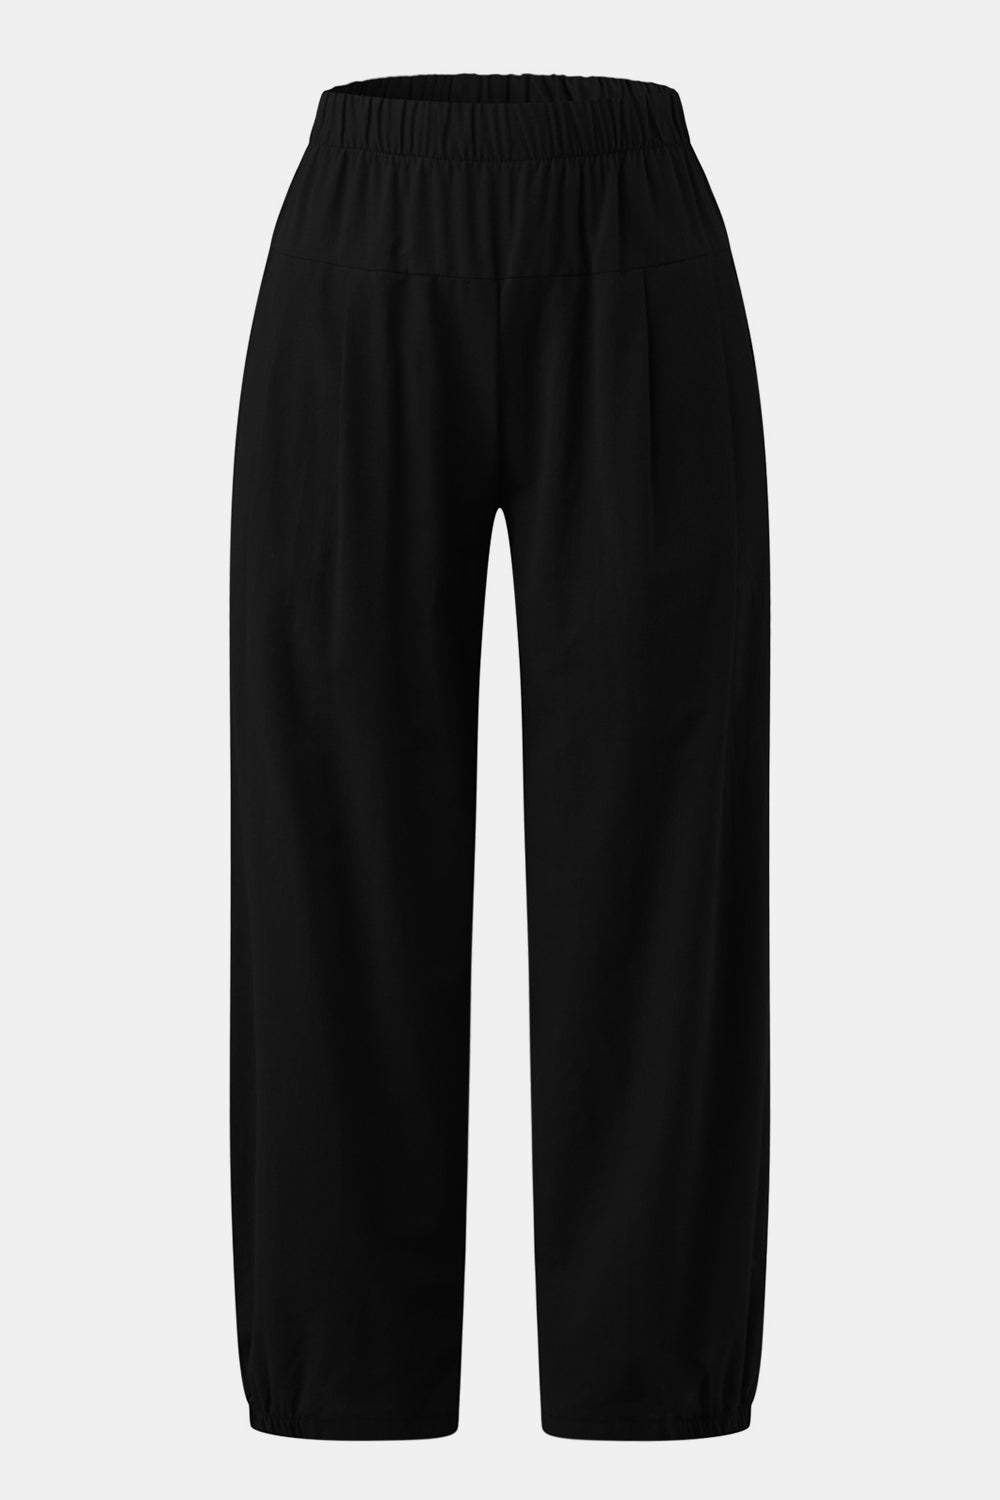 TEEK - Easy Elastic Waist Cropped Pants PANTS TEEK Trend   